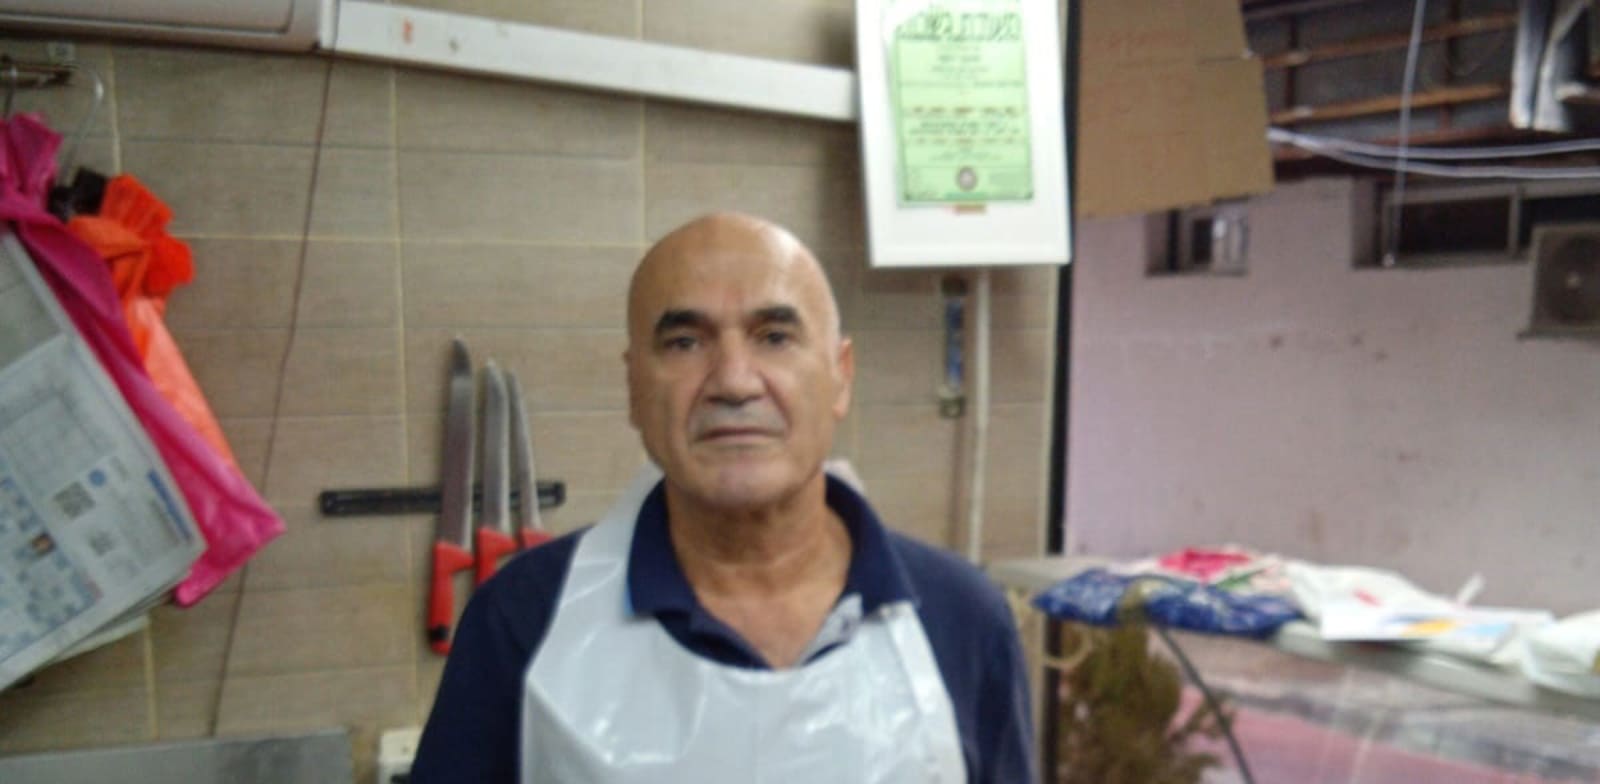 יוסף סומך. בעל איטליז משפחתי בשוק הכרמל בתל אביב / צילום: תמונה פרטית